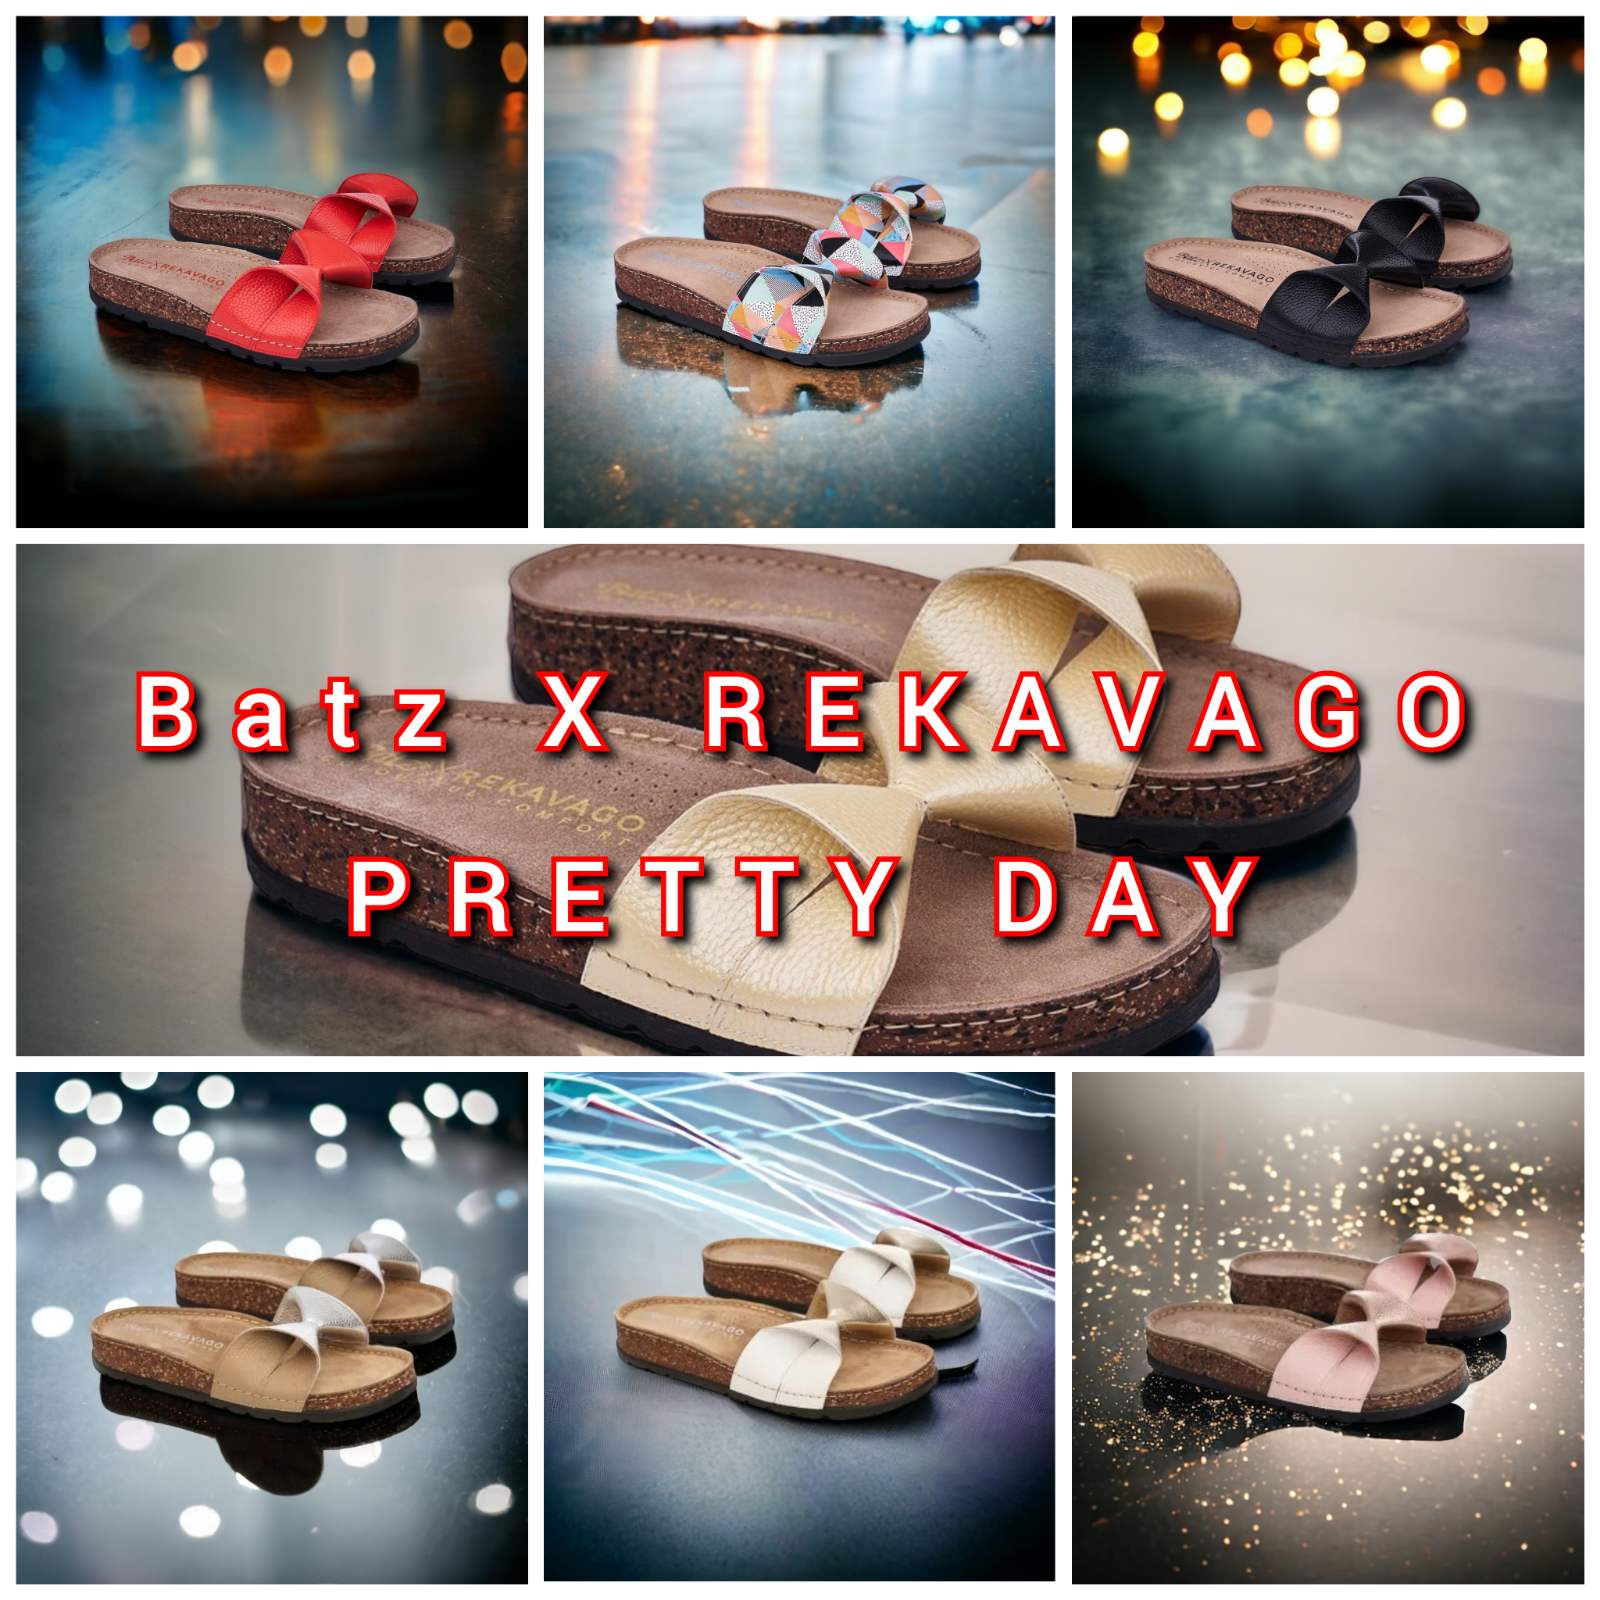 Batz pretty day collage